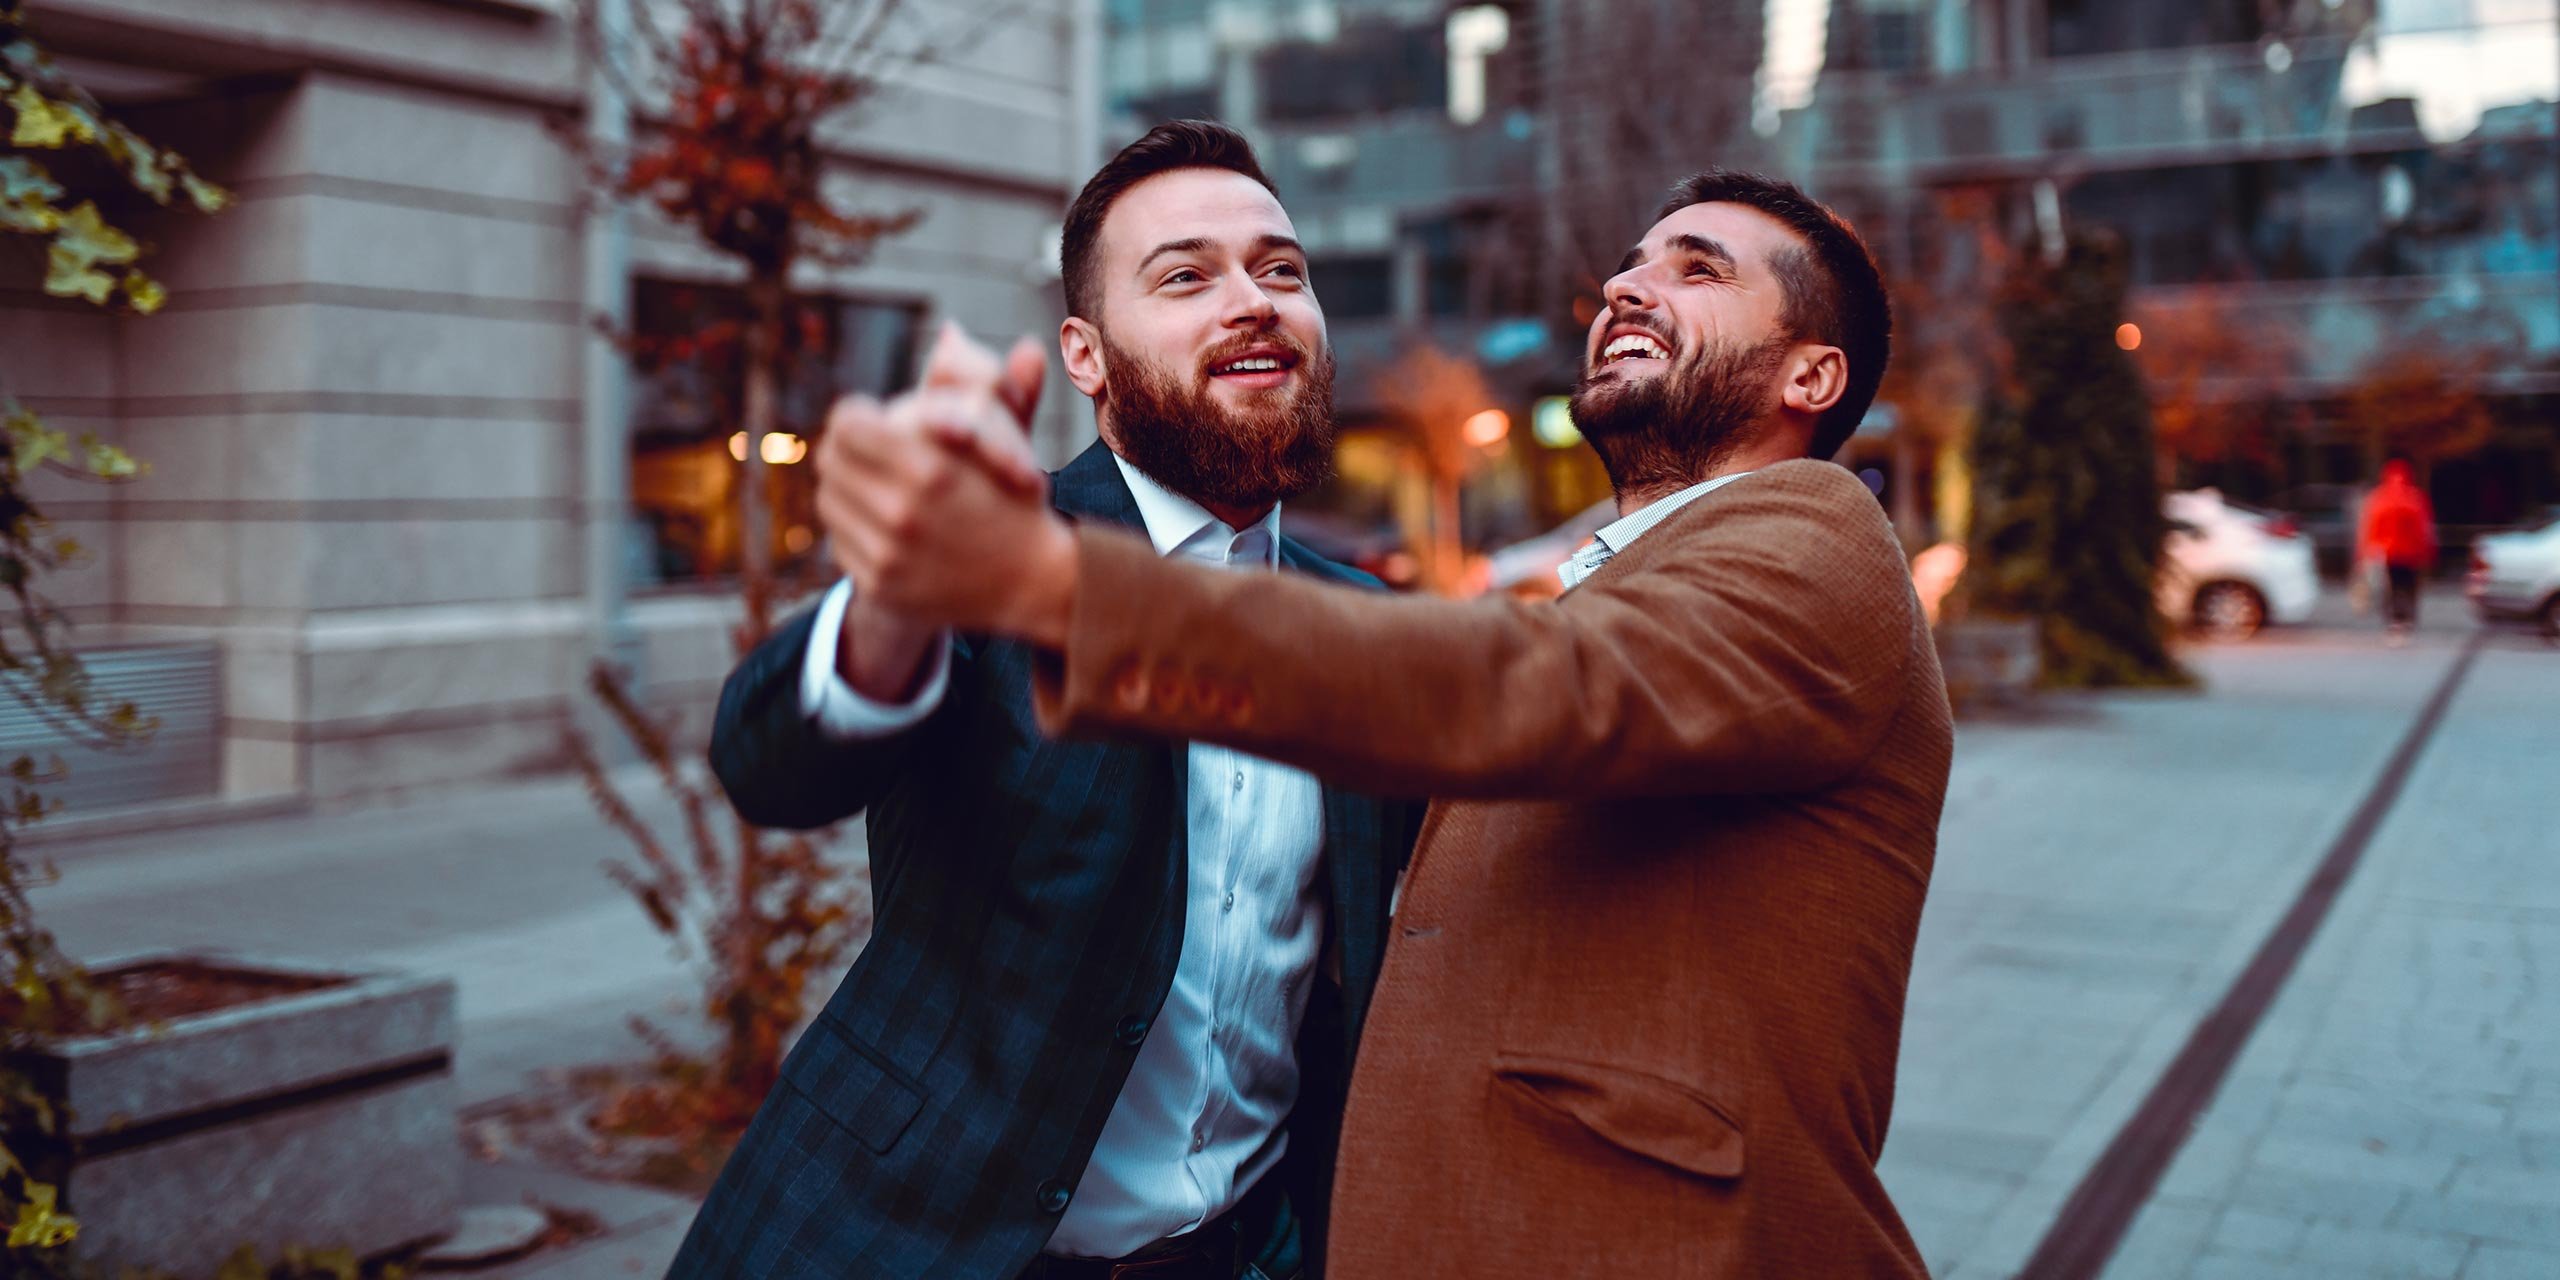 Zwei lachende junge Männer in Tanzhaltung vor einem Gebäude